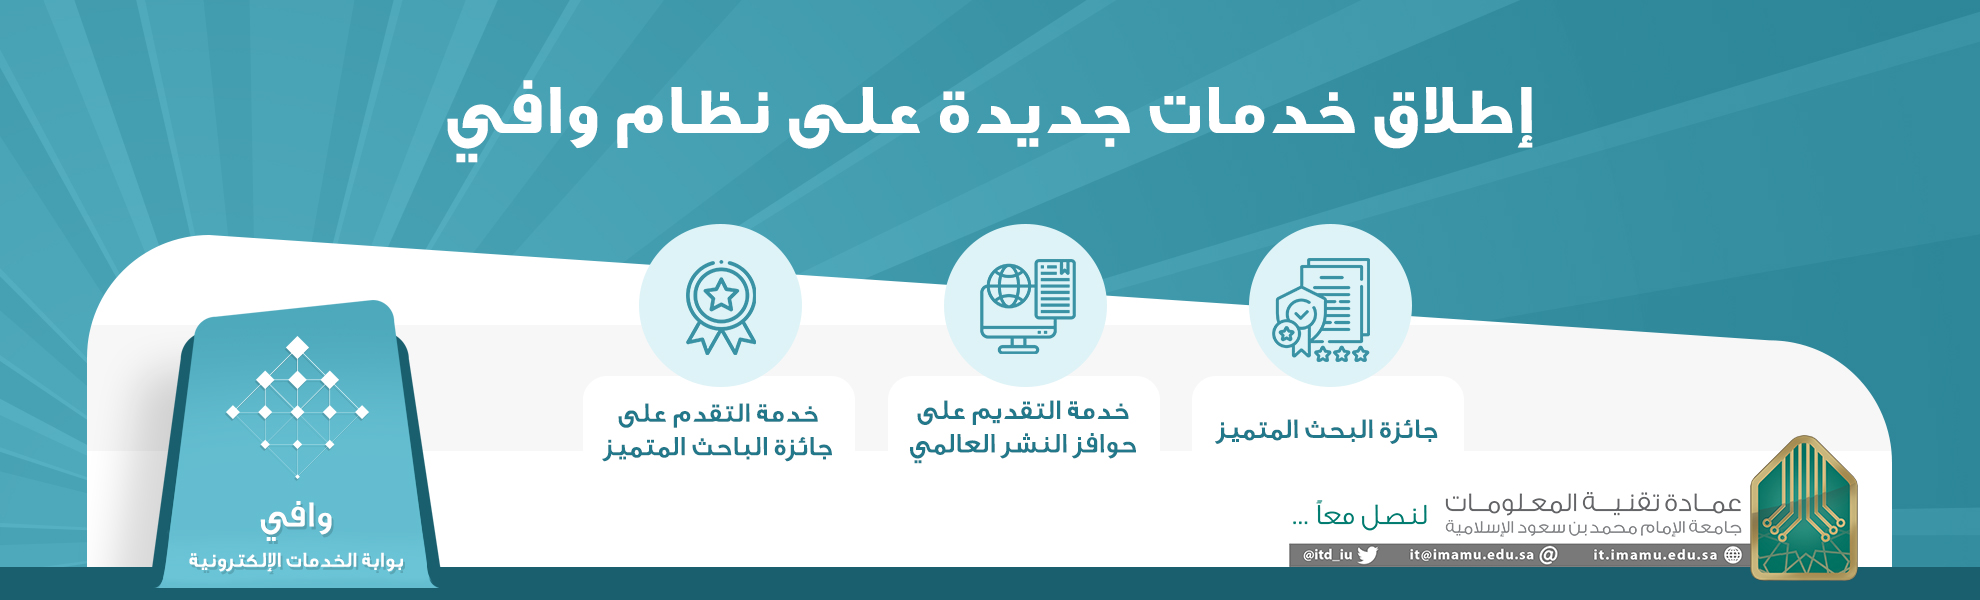 المساندة الخدمات جامعة الإمام طريقة التسجيل